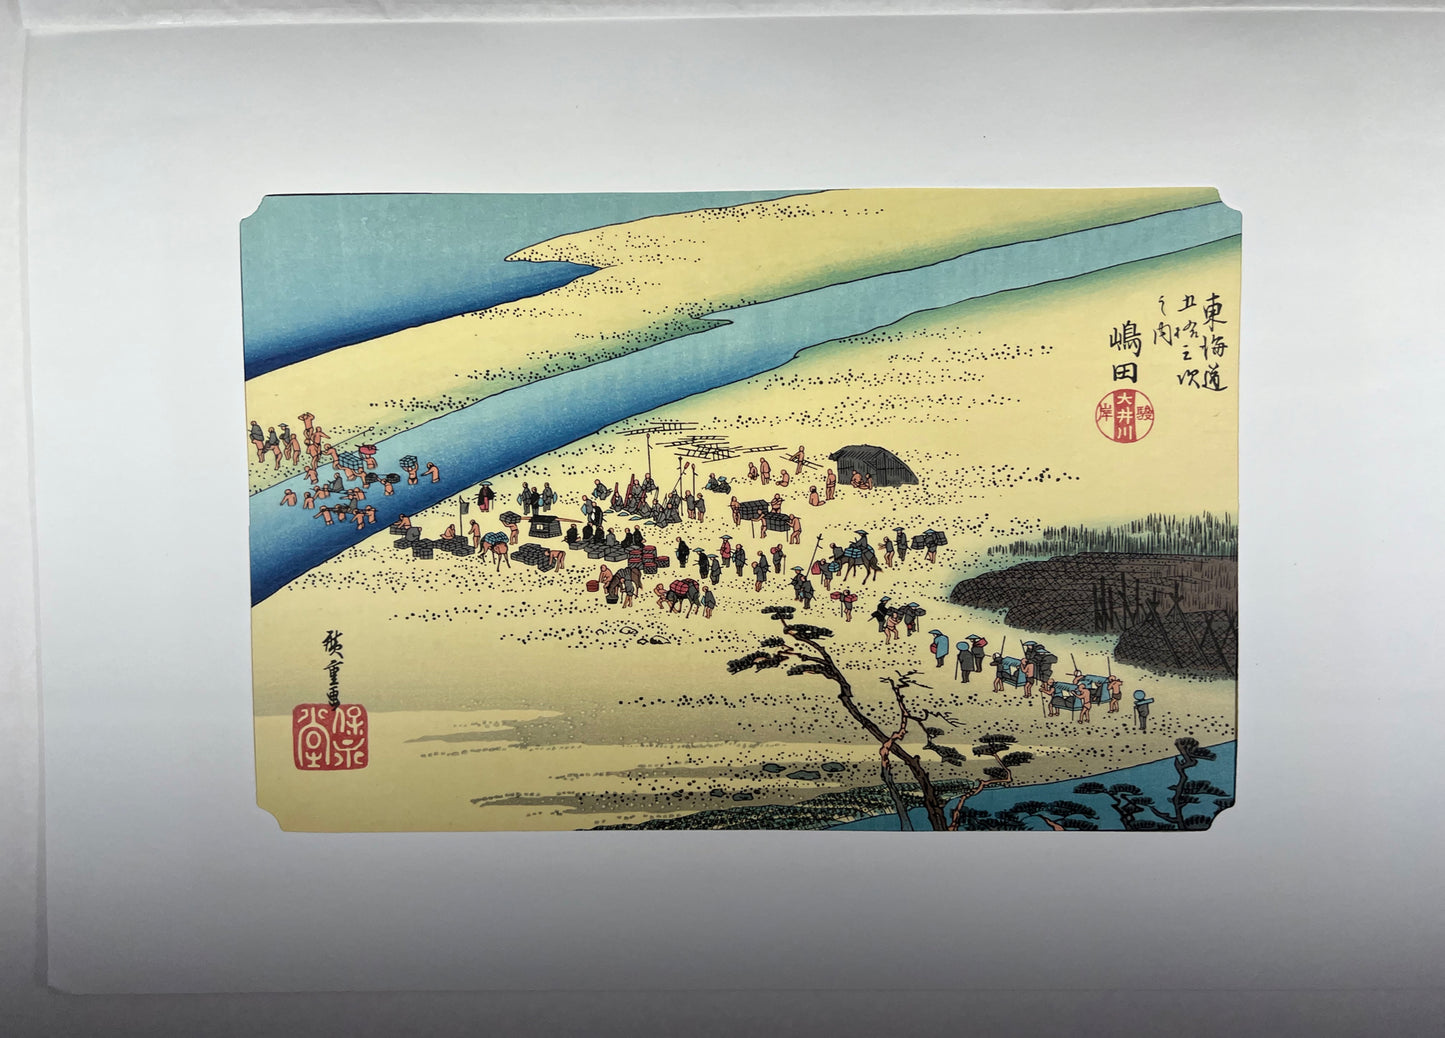 estampe japonaise de Hiroshige, des personnes se préparent pour traverser la rivière à pied, avec passe-partout